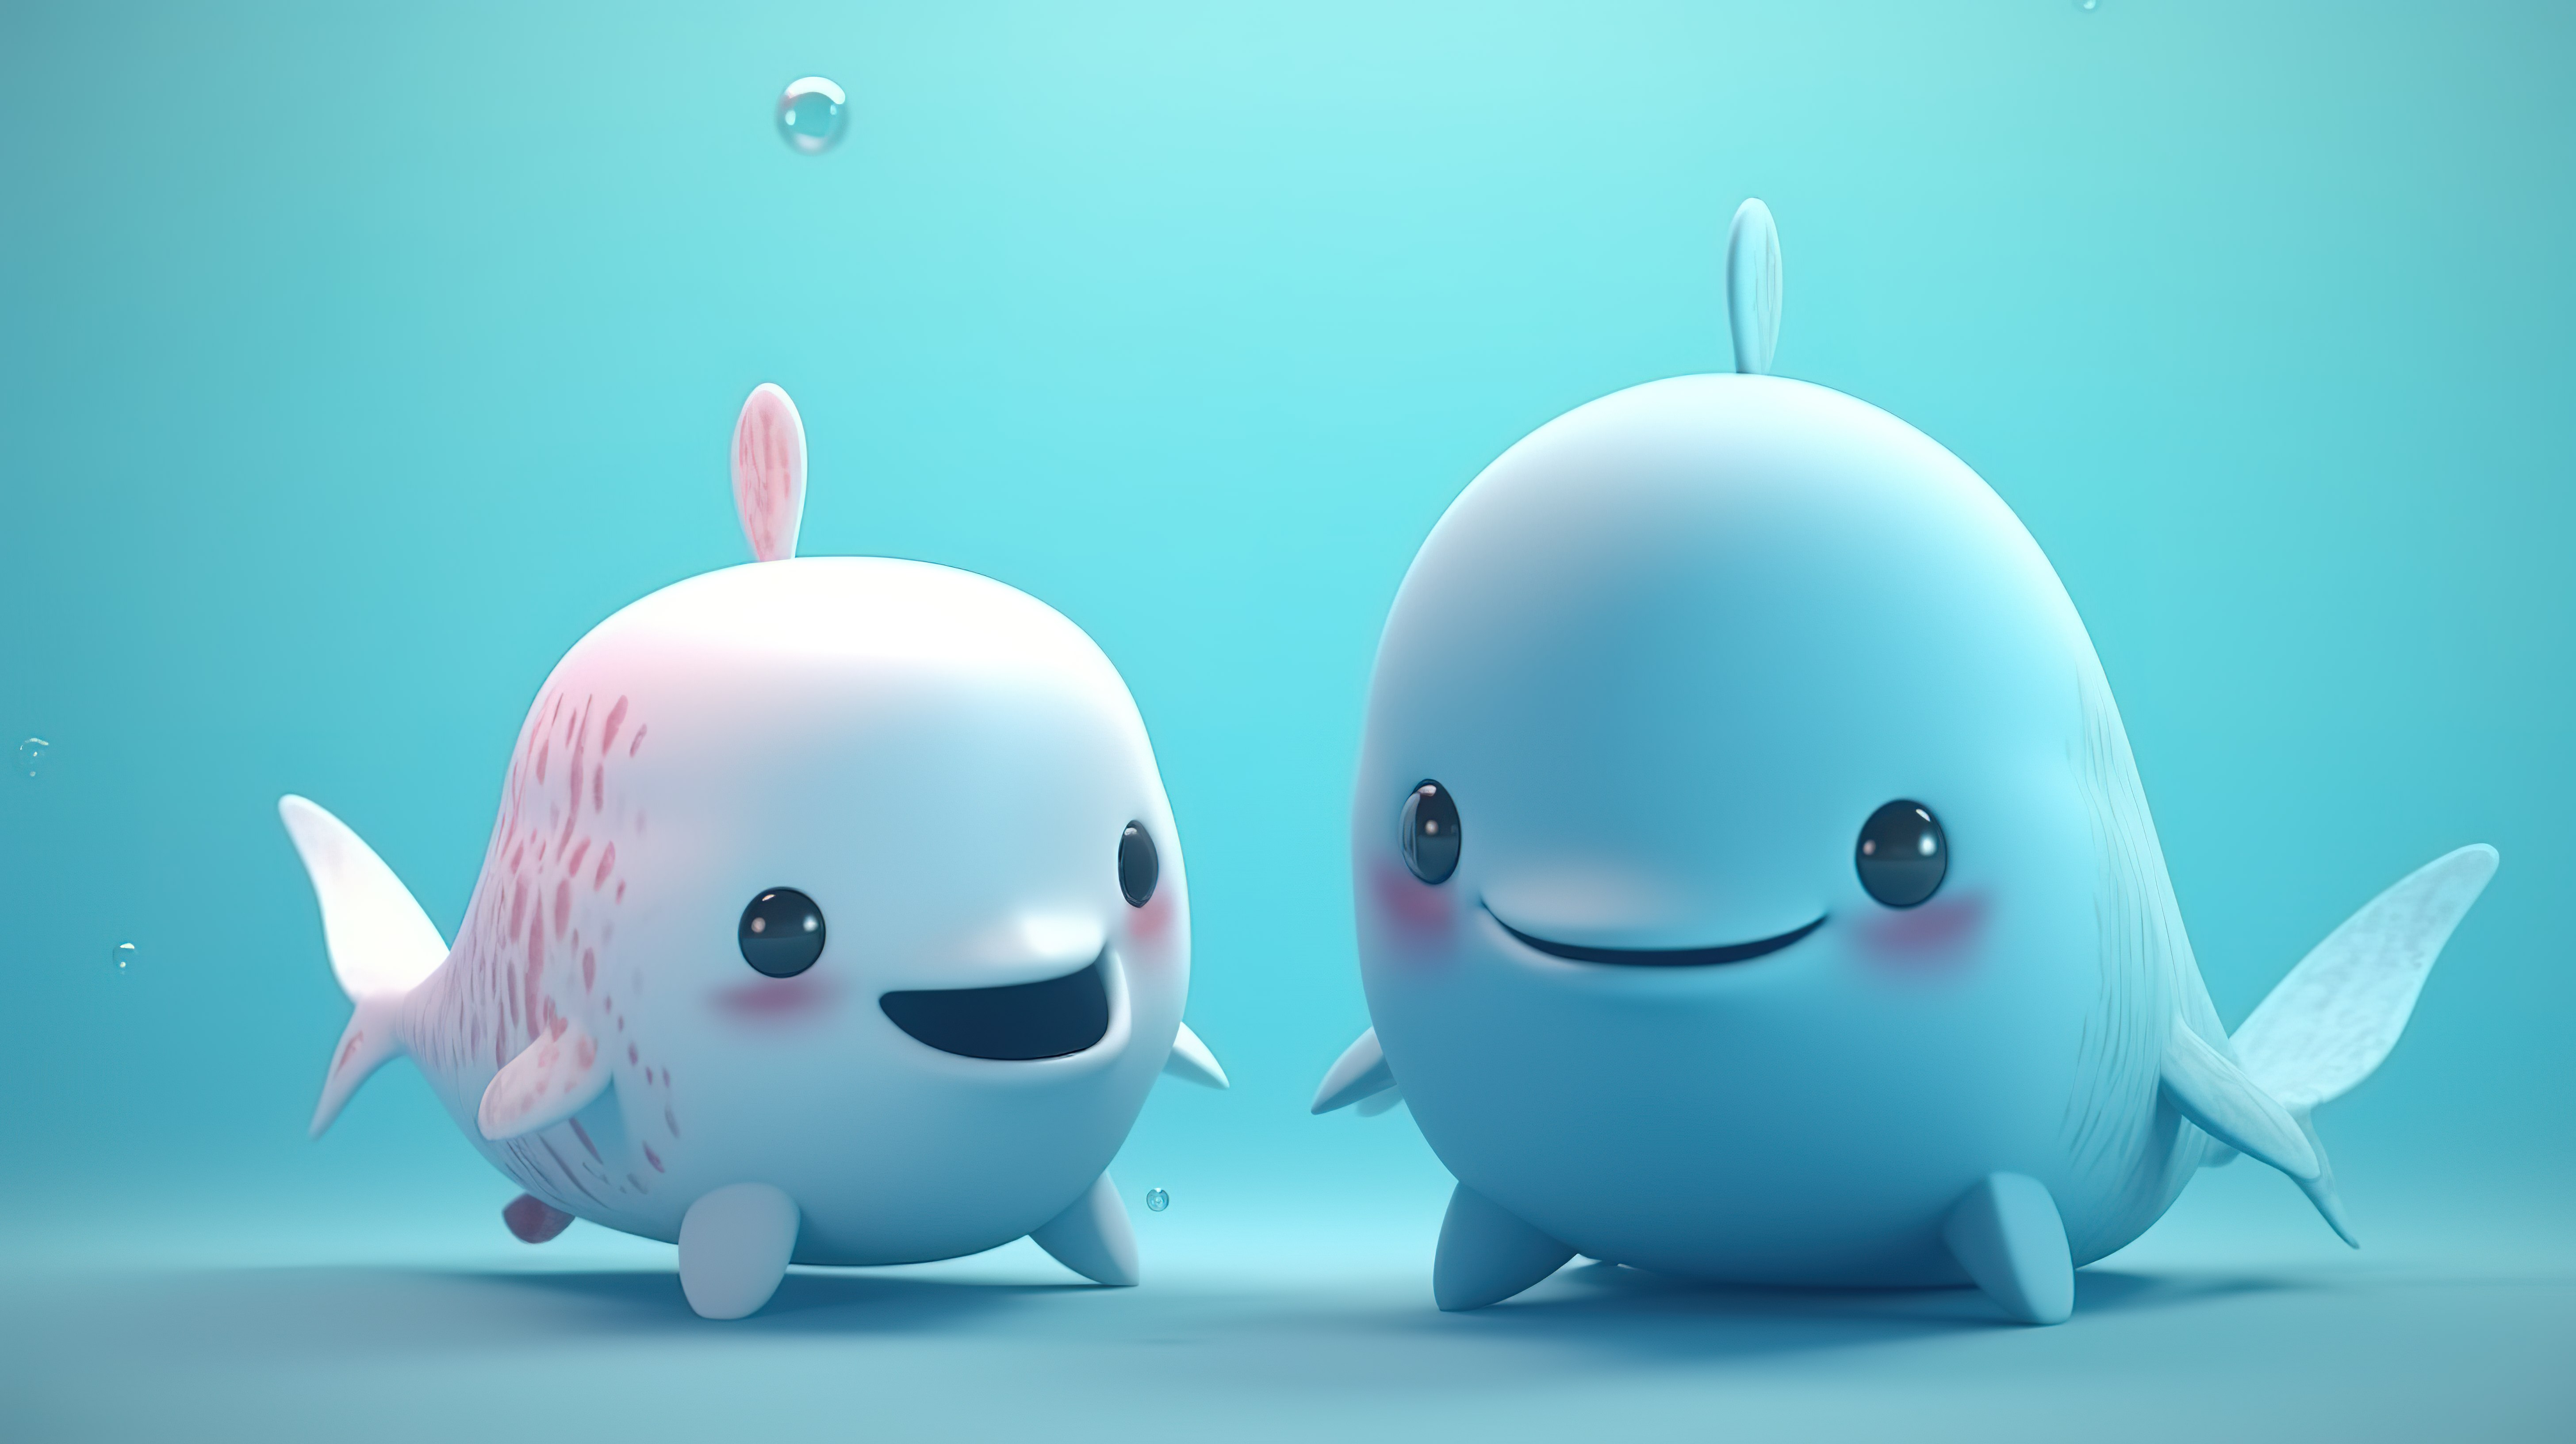 3D 渲染的水下世界中卡哇伊鲸鱼独角鲸和小头鼠海豚的迷人卡通人物图片